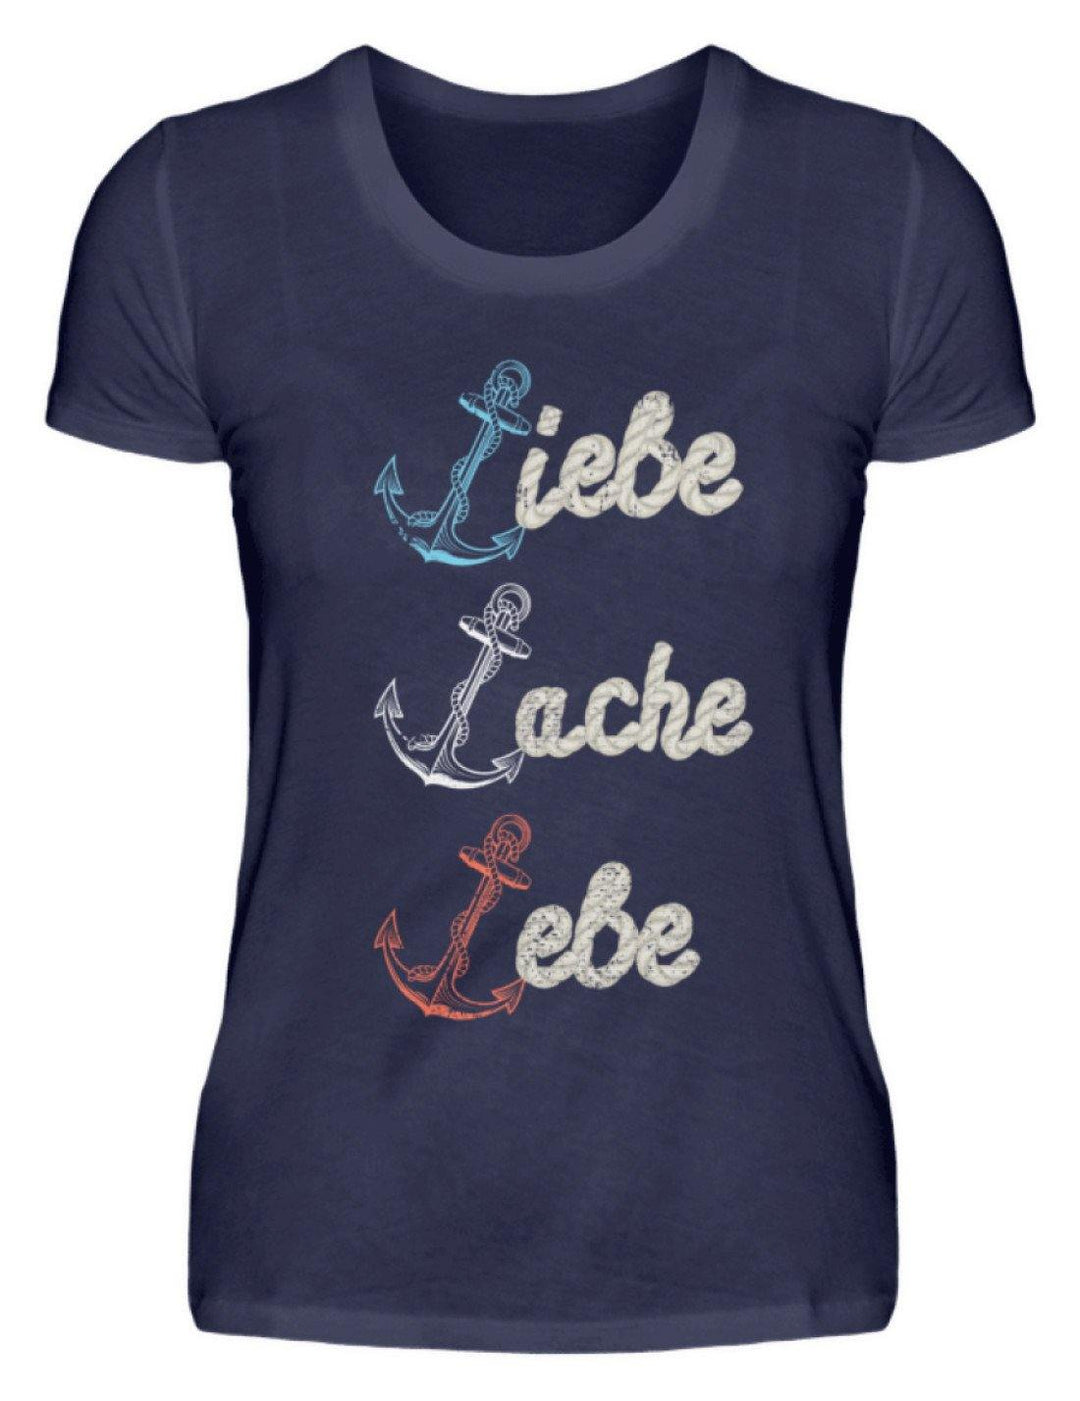 Liebe Lache Lebe - Norddeutsch   - Damenshirt - Words on Shirts Sag es mit dem Mittelfinger Shirts Hoodies Sweatshirt Taschen Gymsack Spruch Sprüche Statement